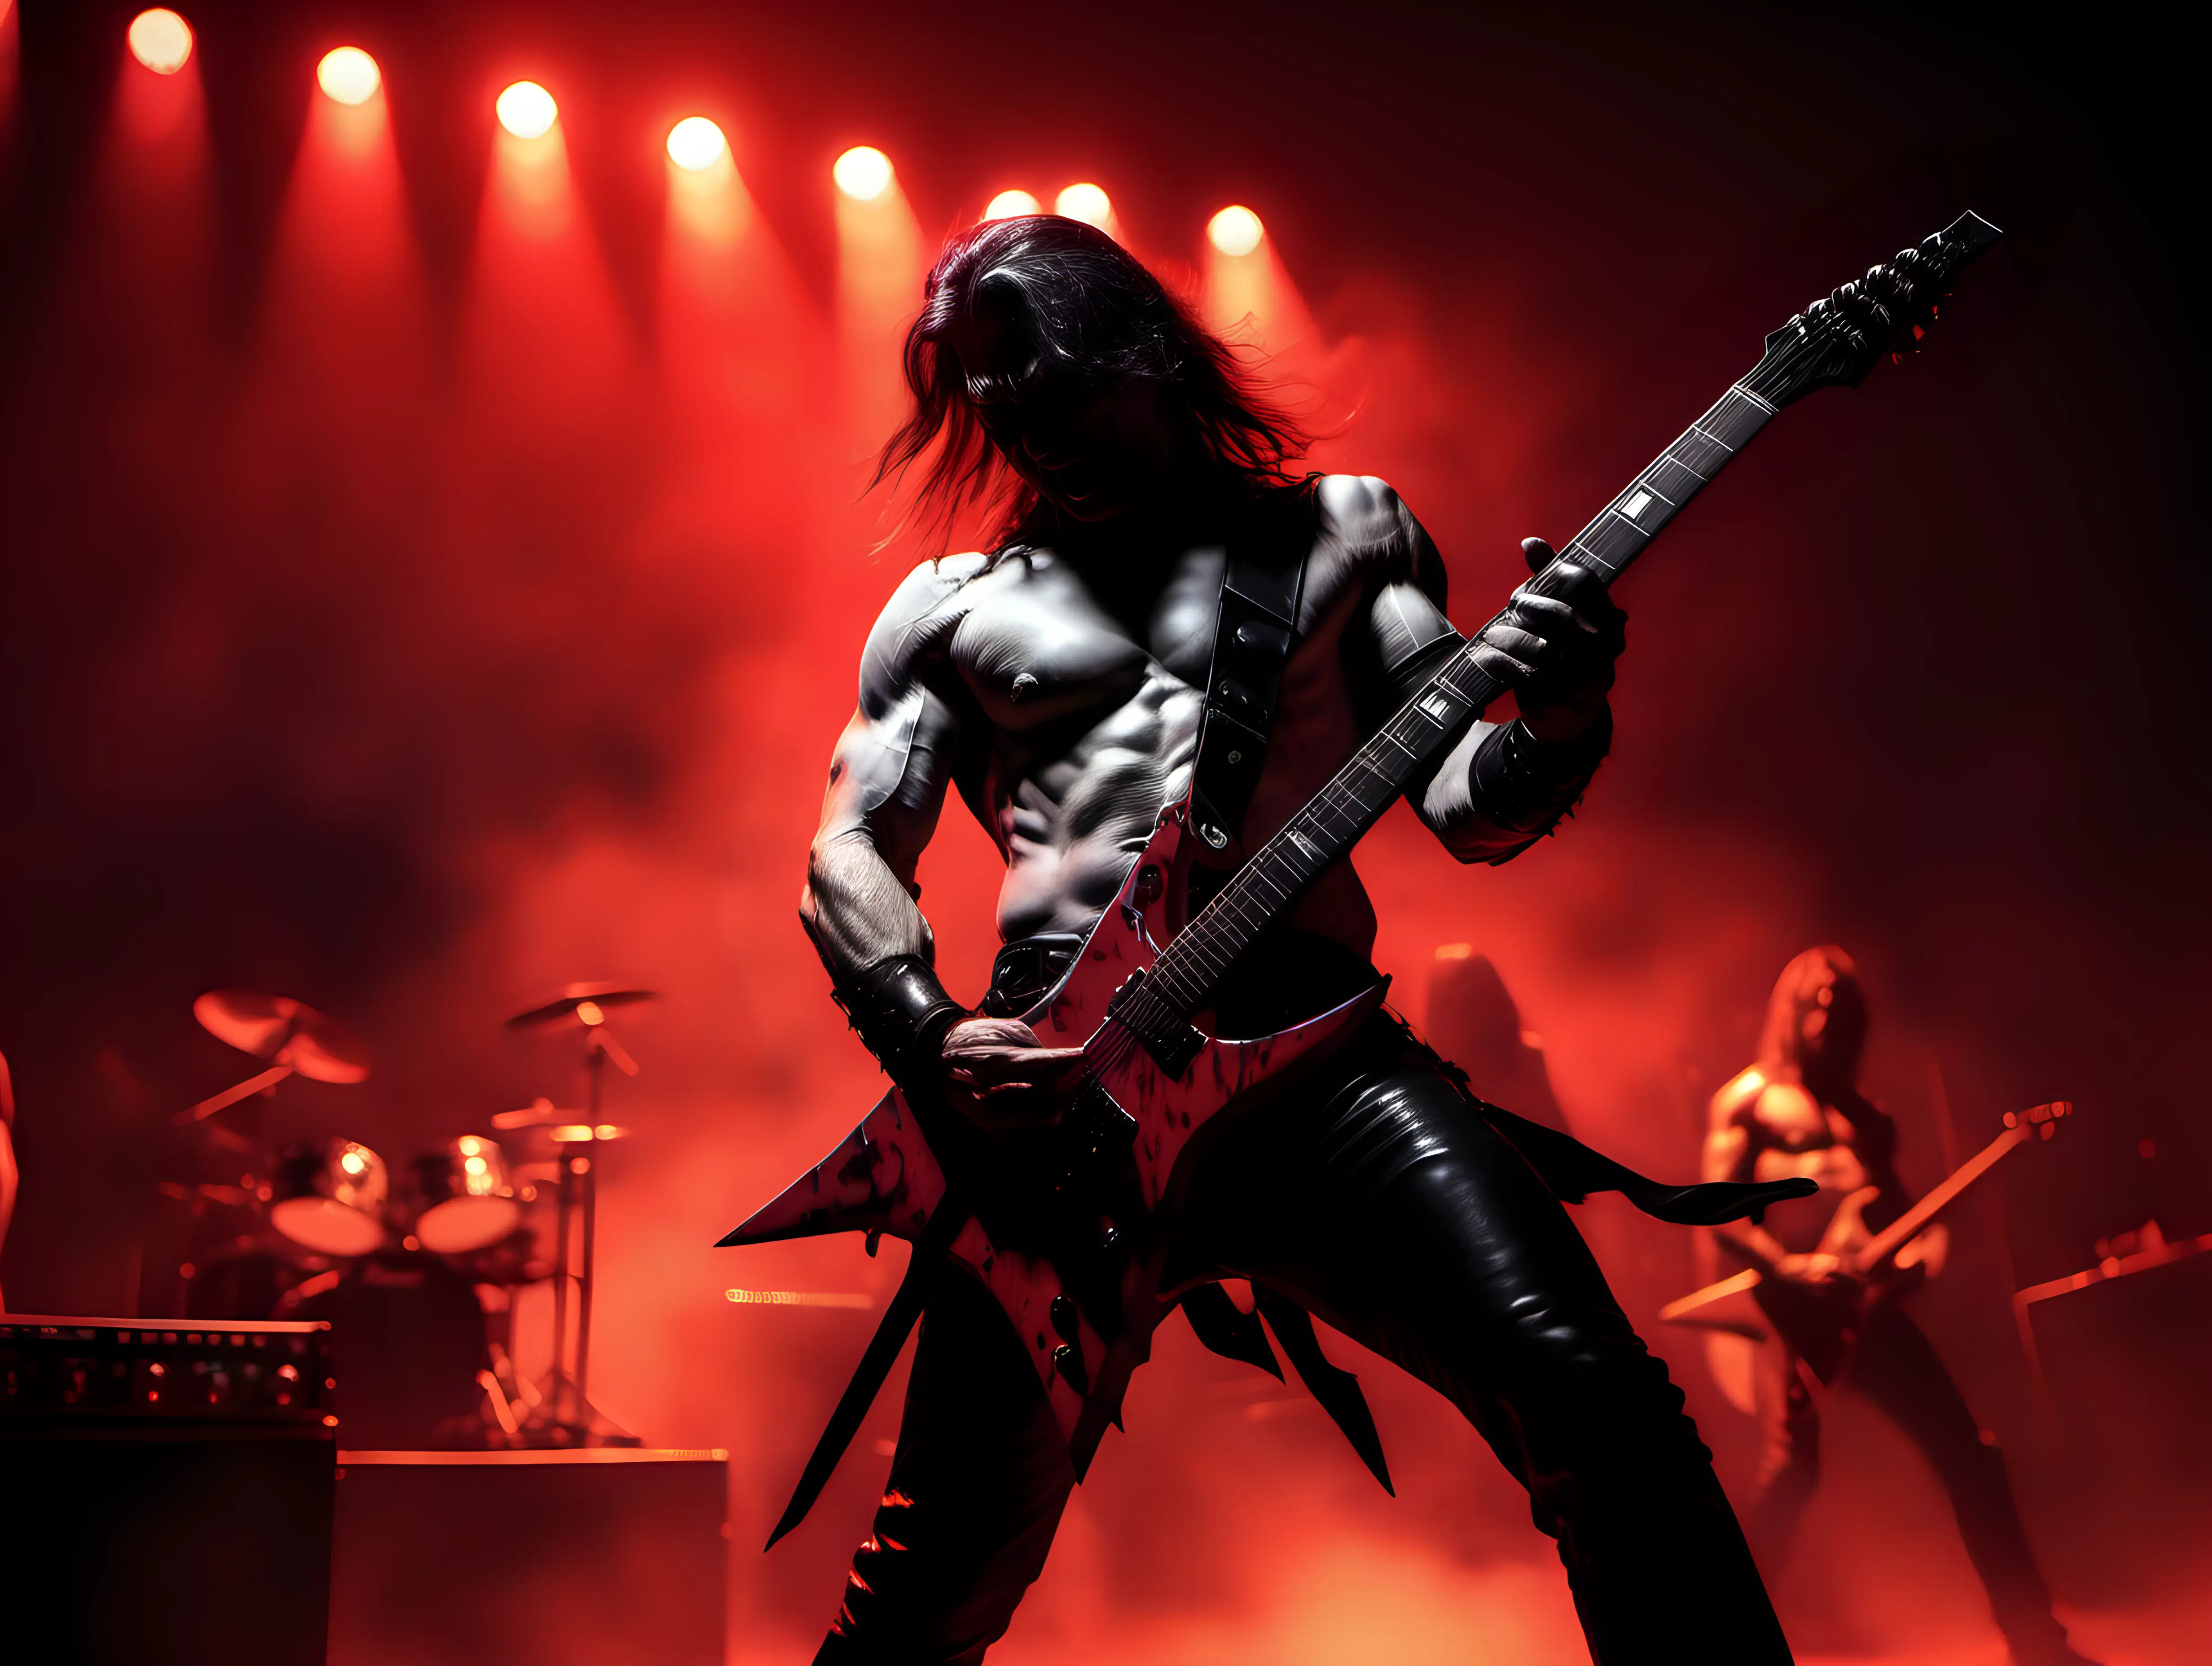 Epic Heavy Metal Guitar Solo in Fiery Red Light Frank Frazetta Inspired